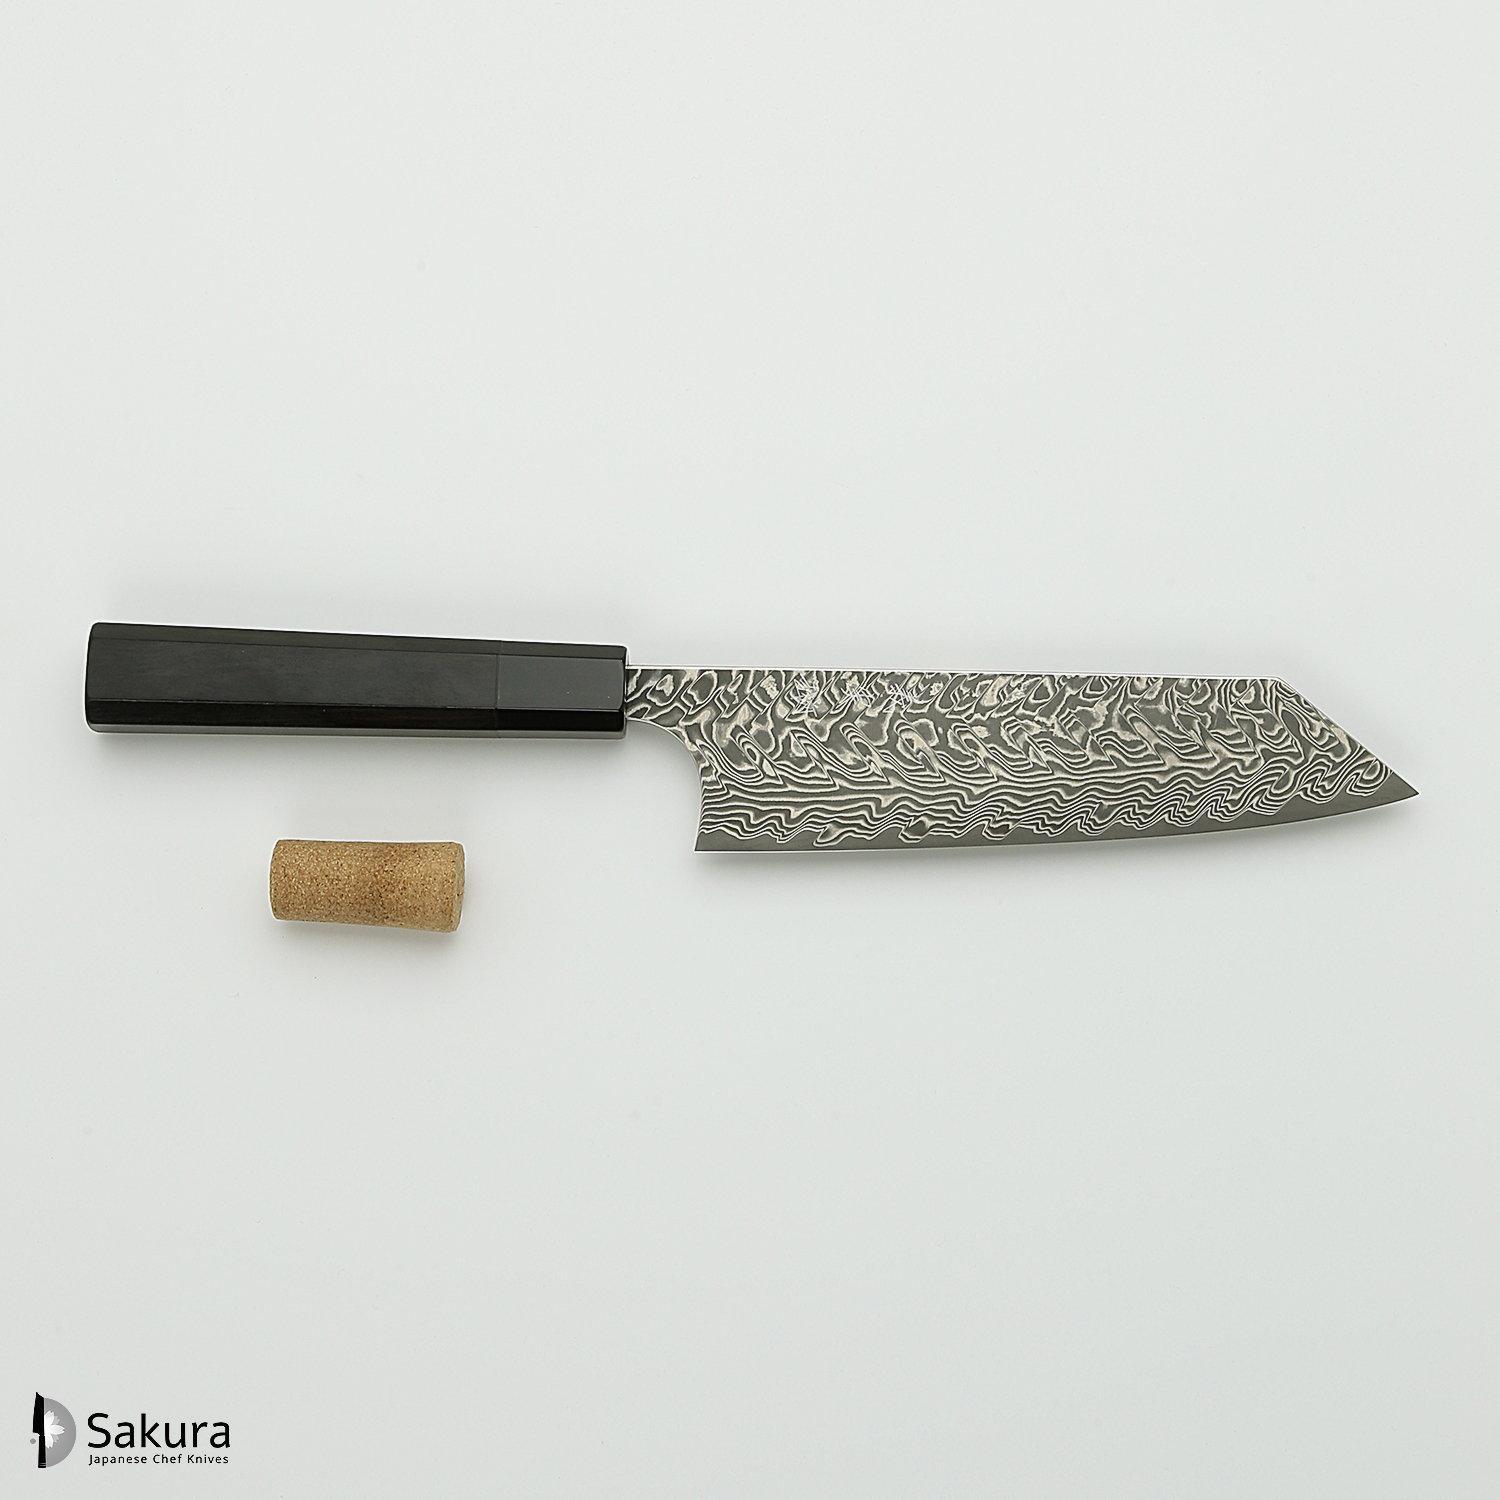 סכין רב-תכליתית בּוּנְקָה 165מ״מ מחושלת בעבודת יד 3 שכבות: פלדת פחמן יפנית מתקדמת מסוג R2/SG2 עטופה פלדת דמשק אל-חלד גימור דמשק יושימי קאטו יפן